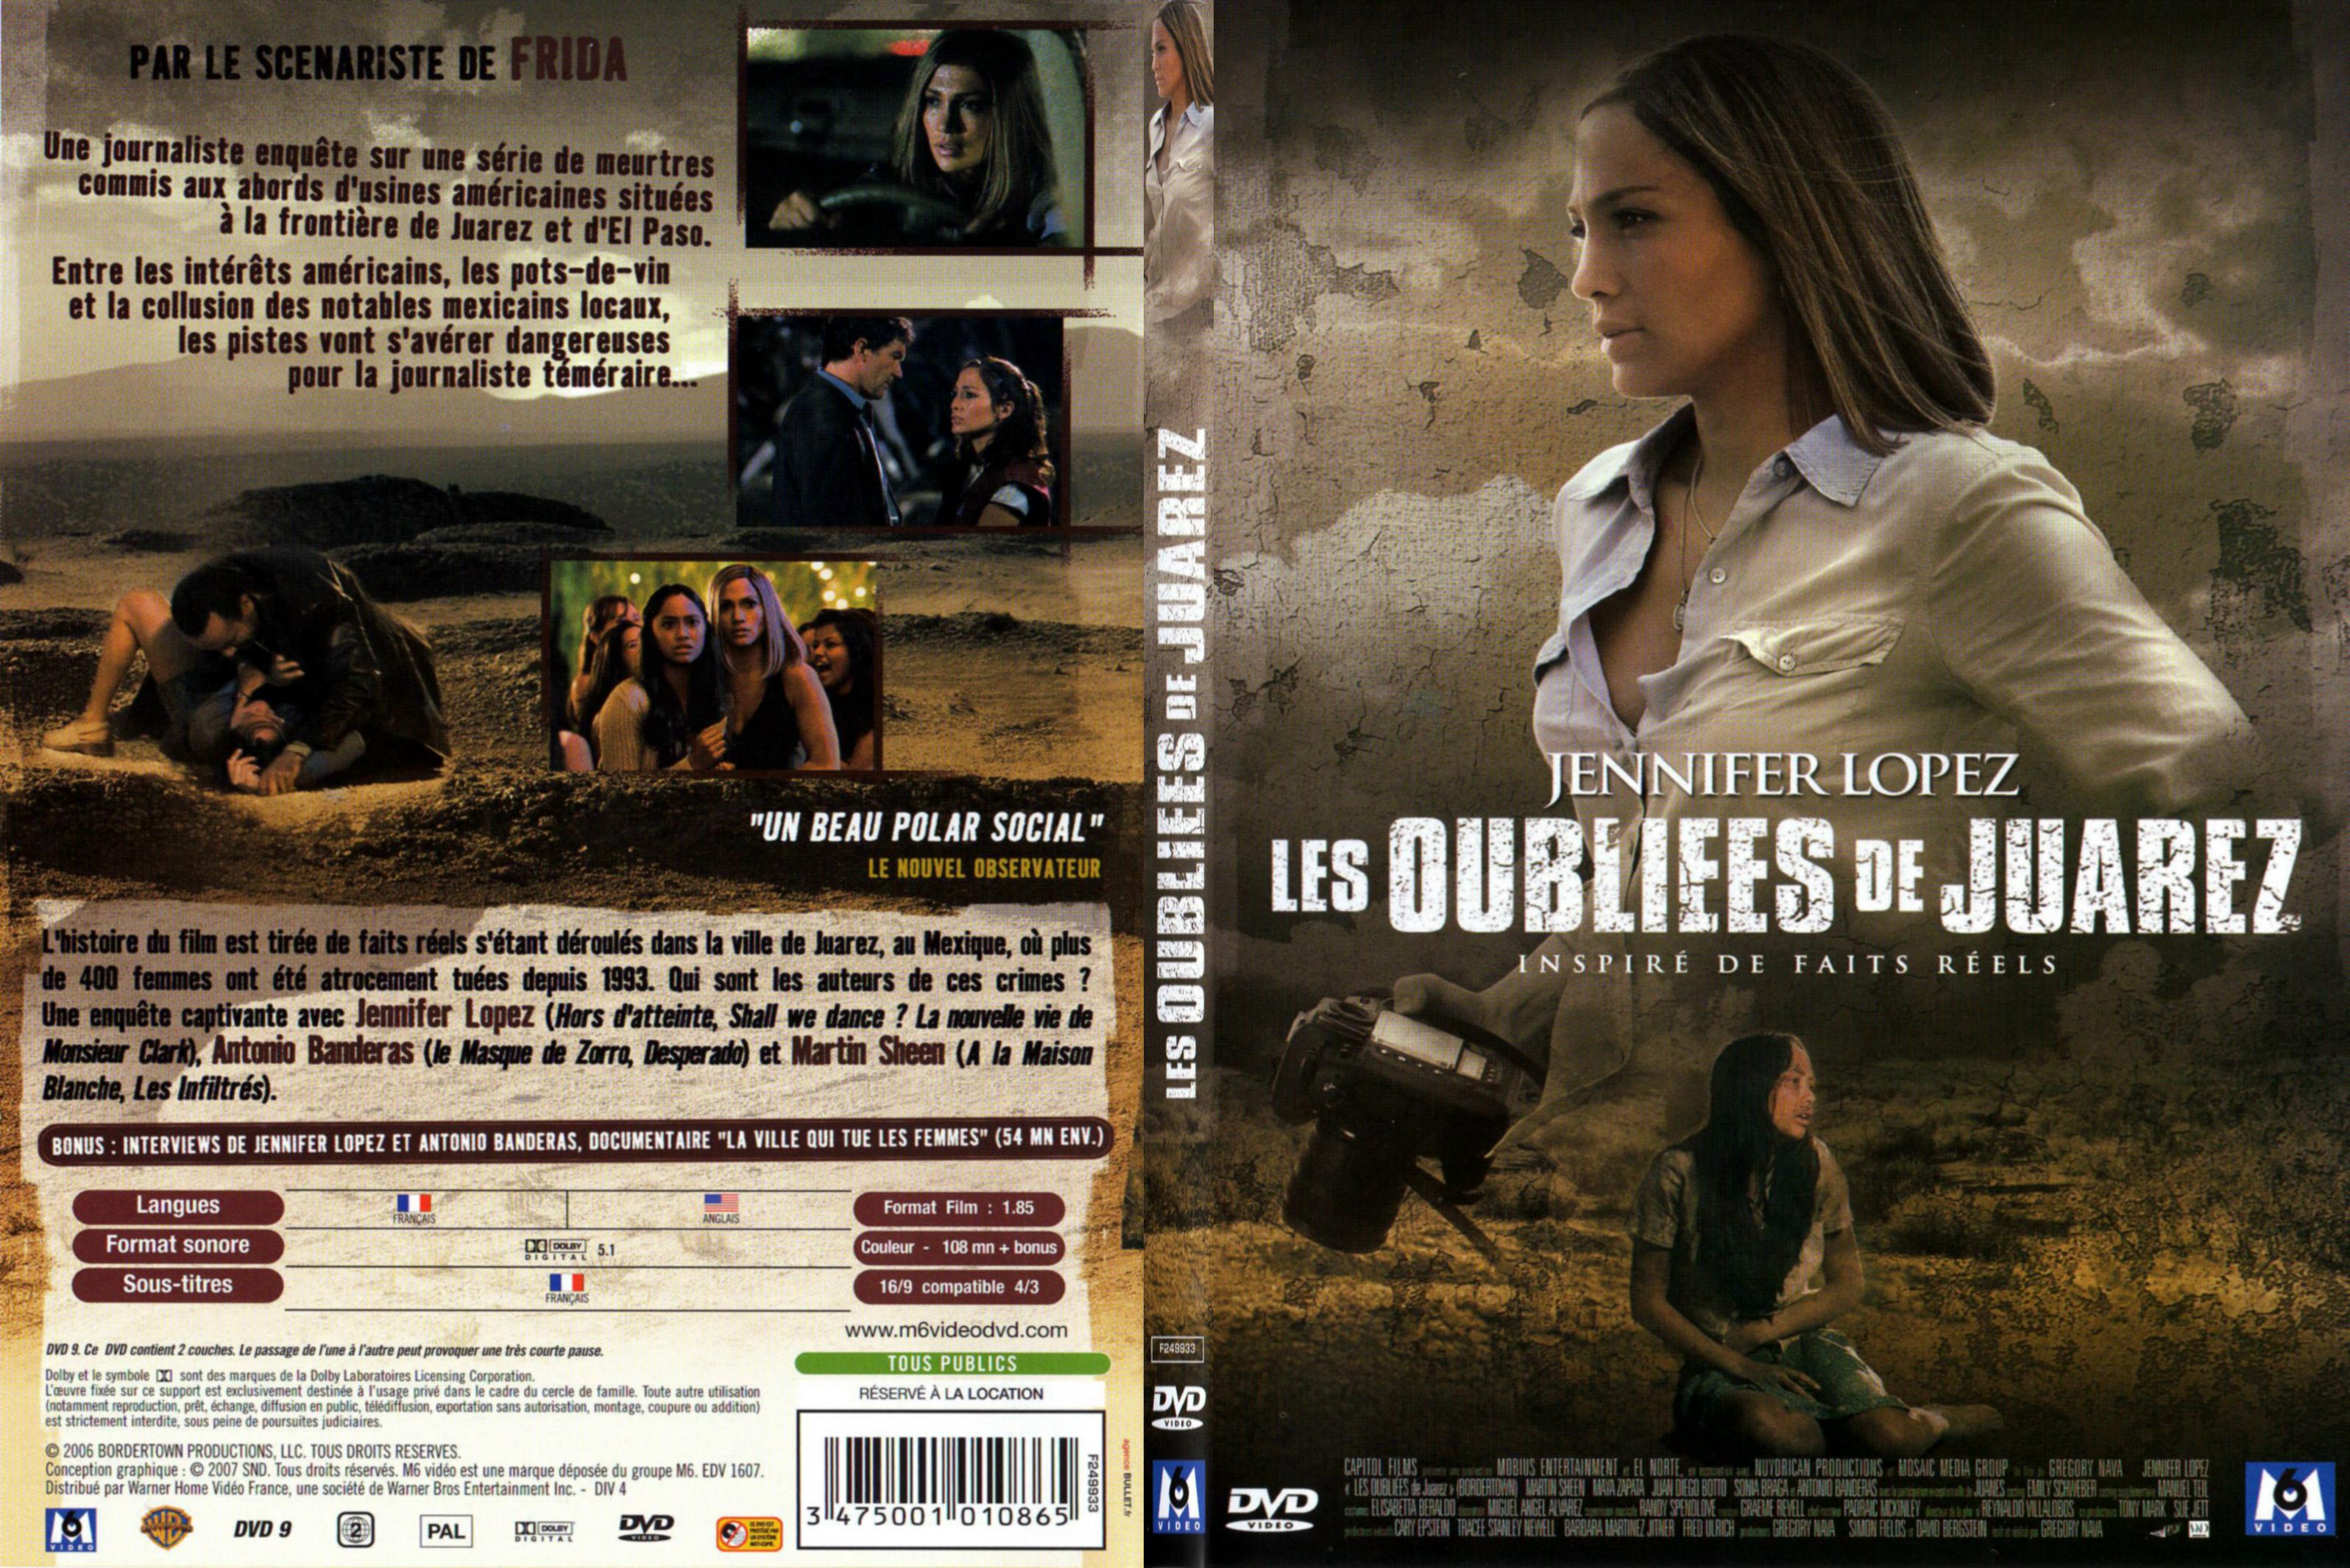 Jaquette DVD Les oubliees de Juarez - SLIM